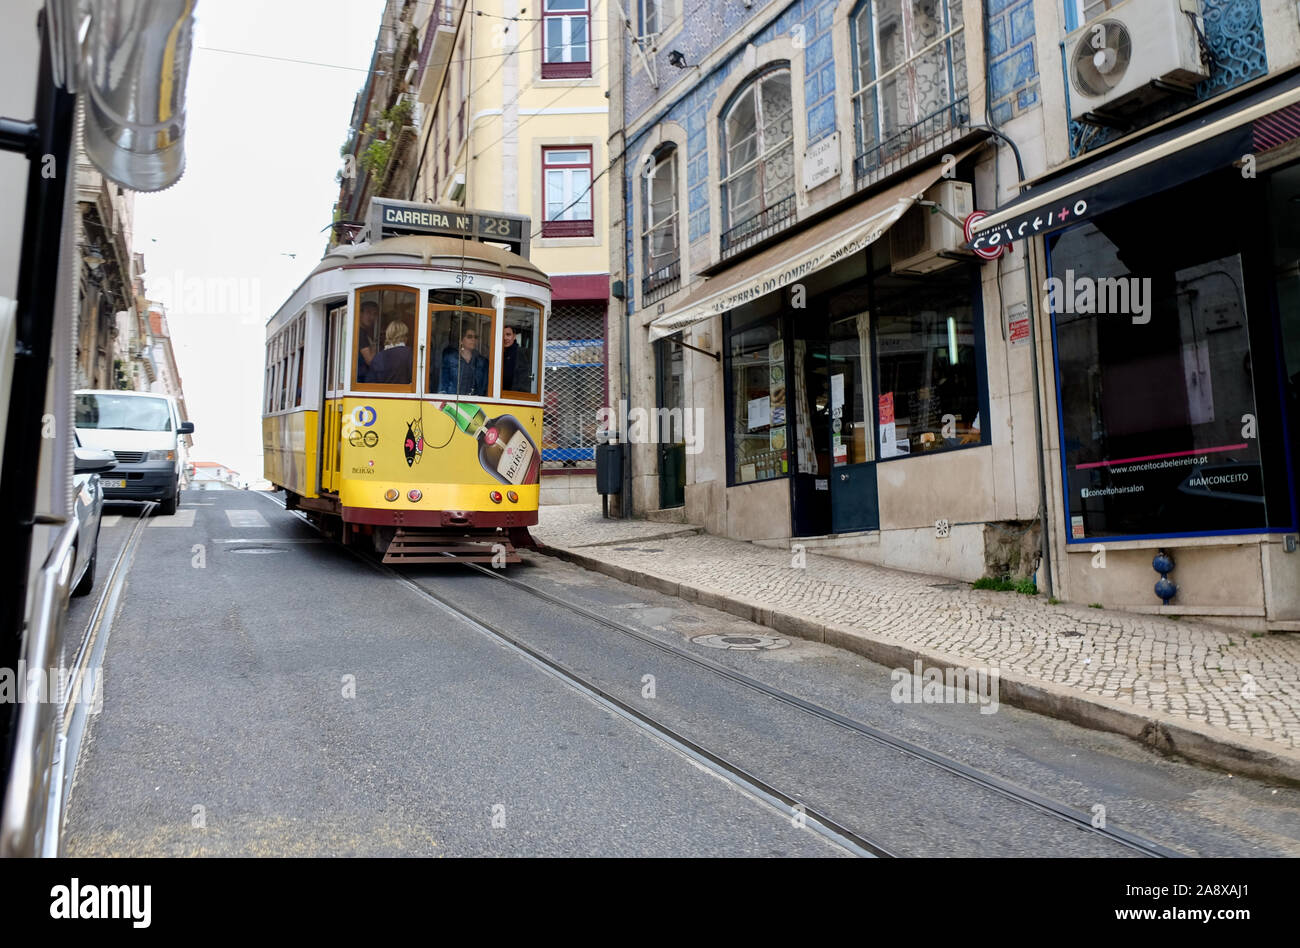 1940 Der era remodelado Straßenbahn, carreira Nr. 28. auf der Route E28 in der Altstadt von Lissabon, Portugal. Stockfoto